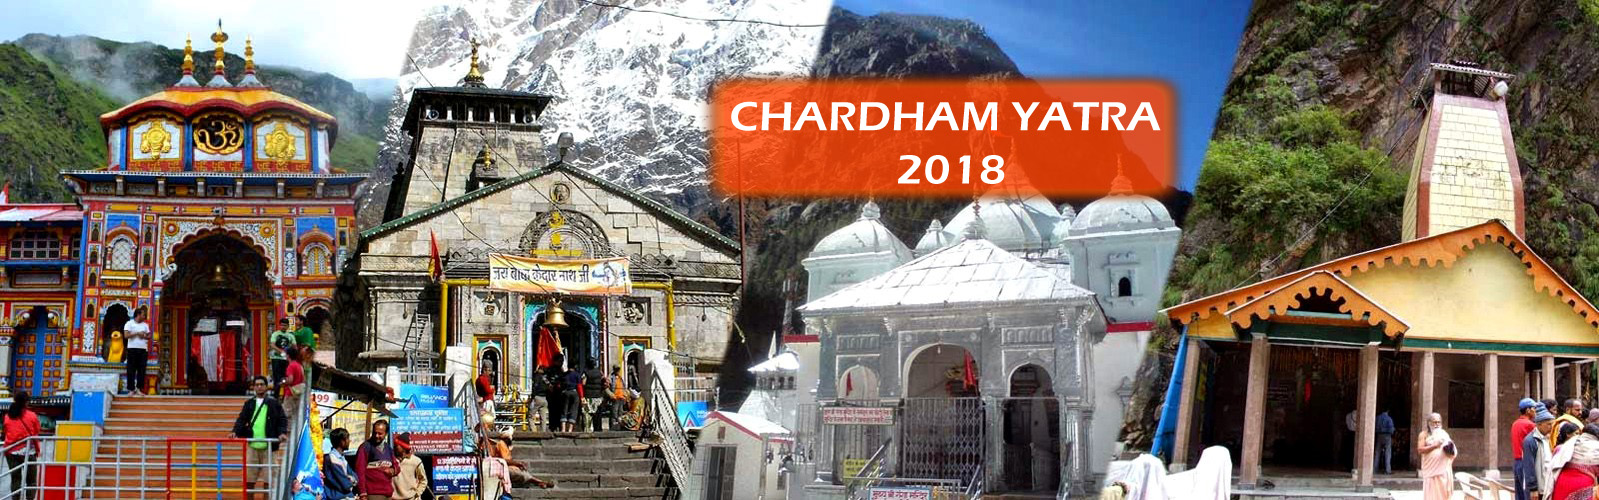 ChardhamYatra 2018